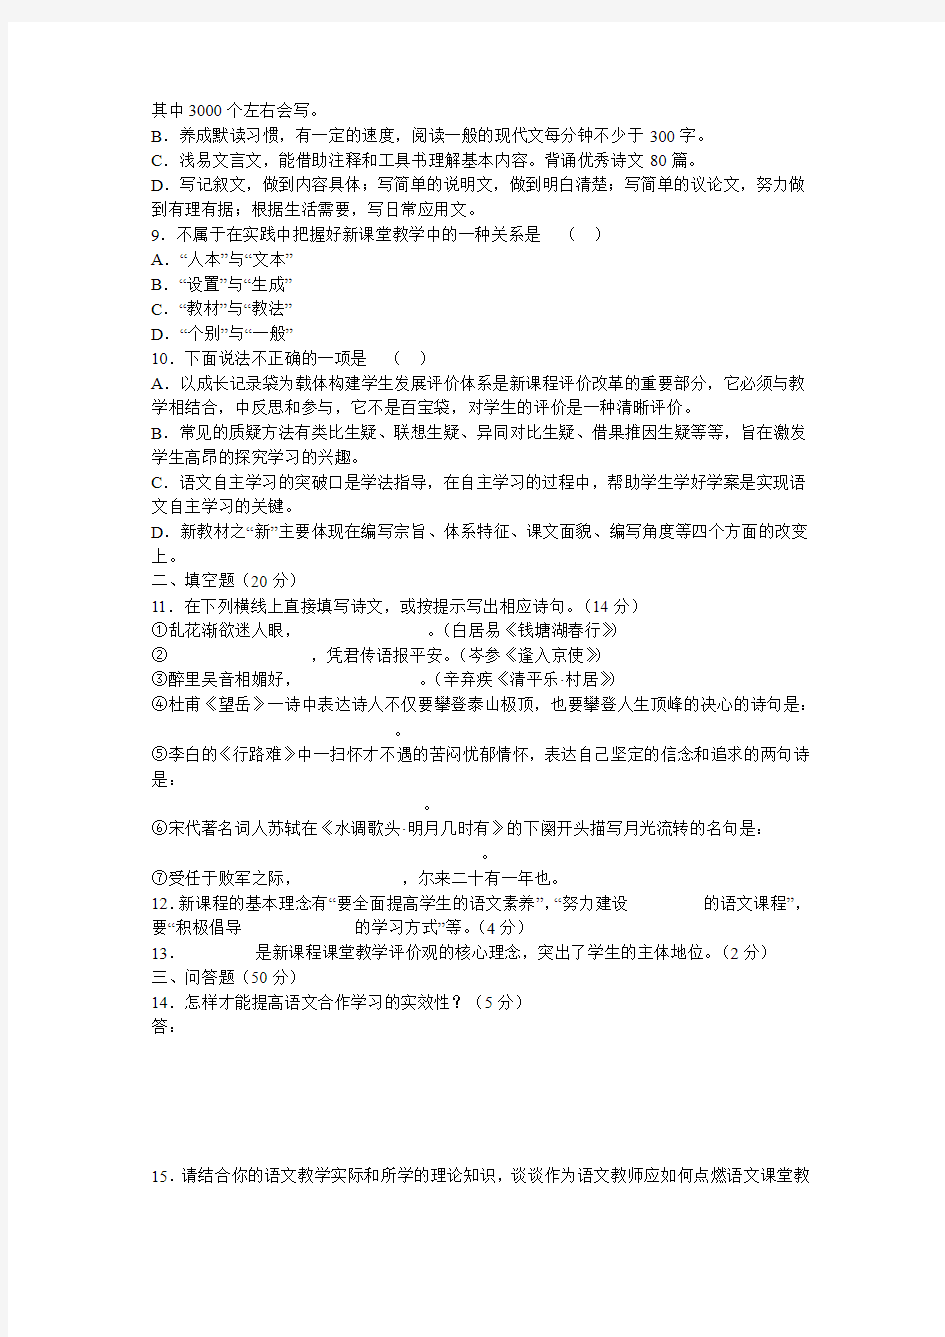 初中语文教材教法模拟试题及答案 (共三套)